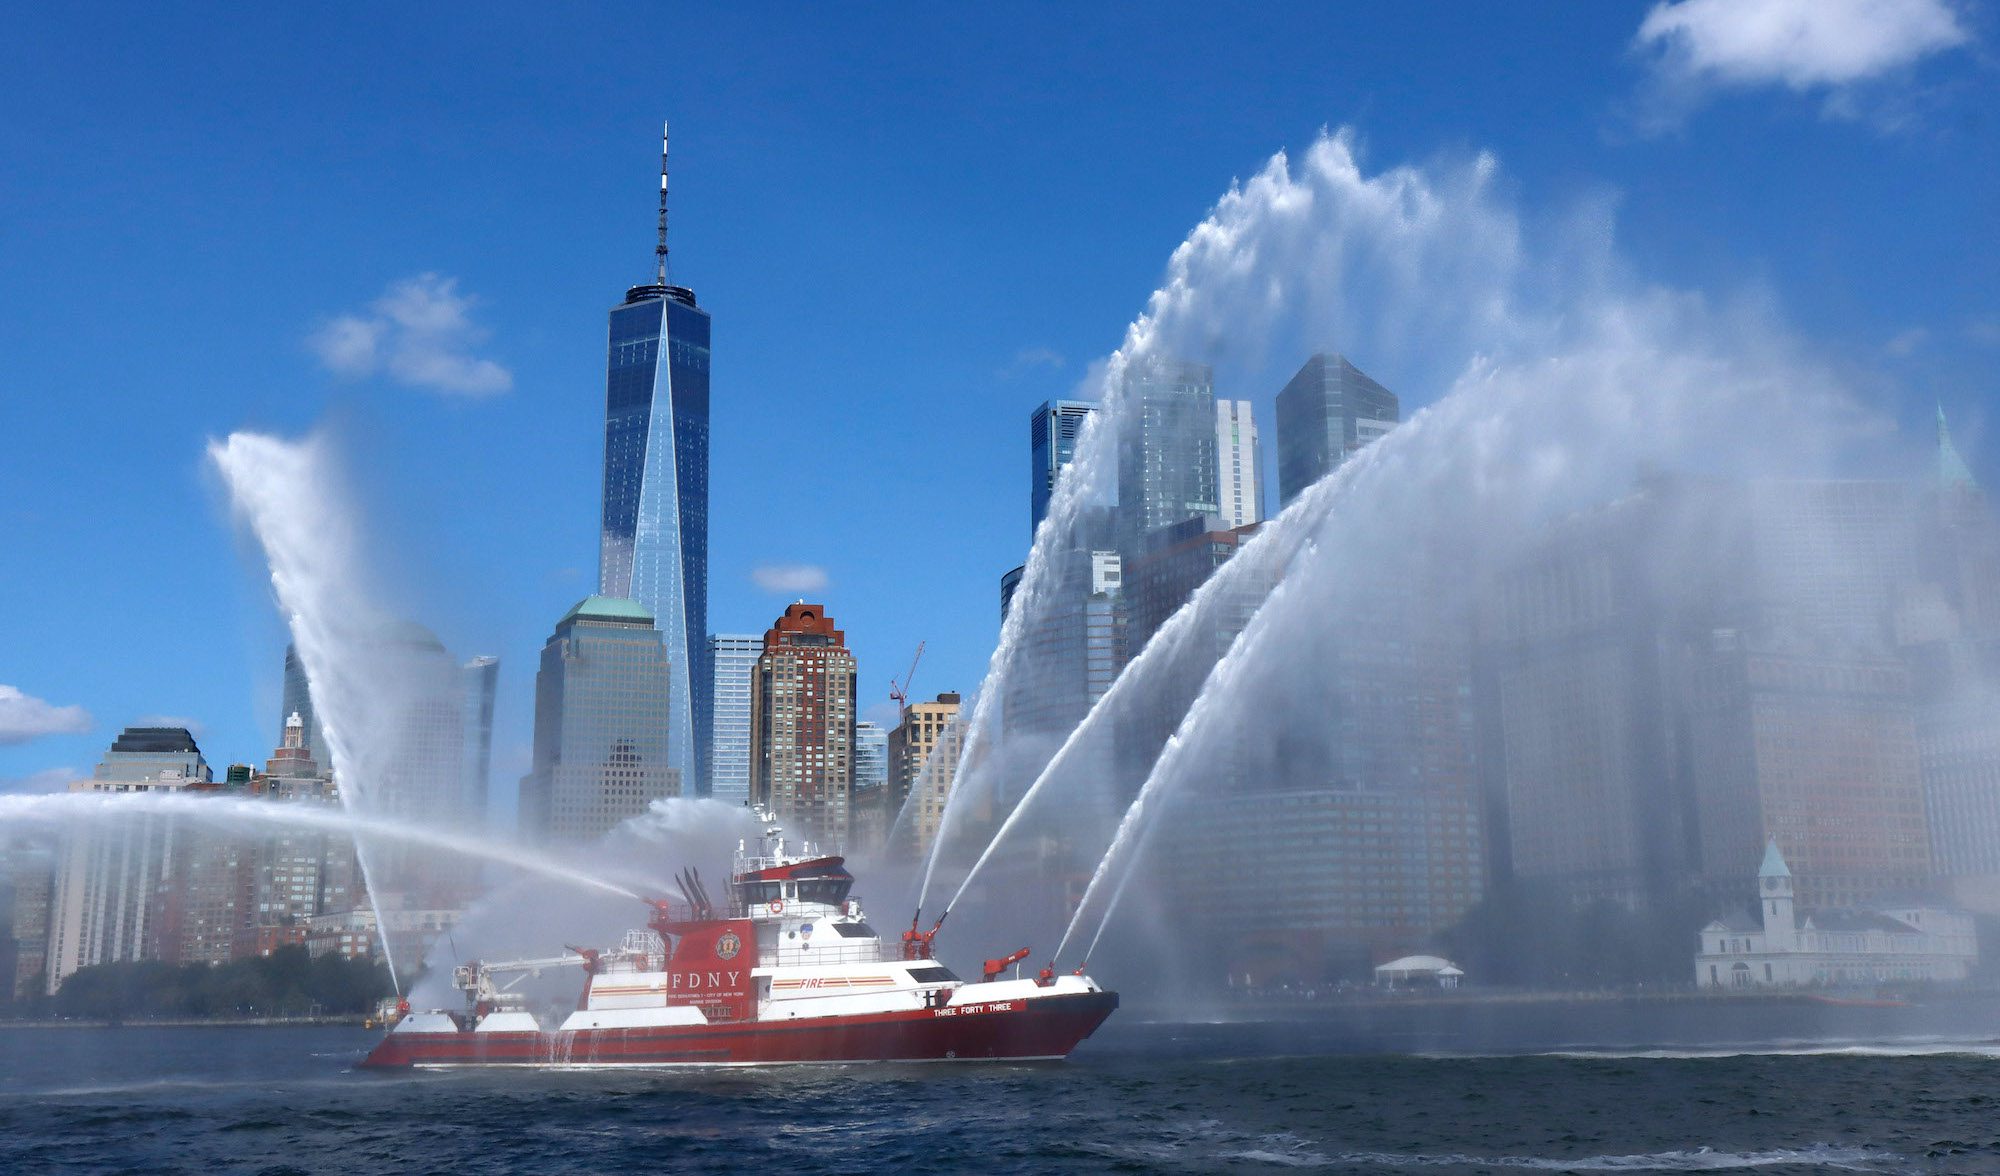 September 11 flotilla commemoration